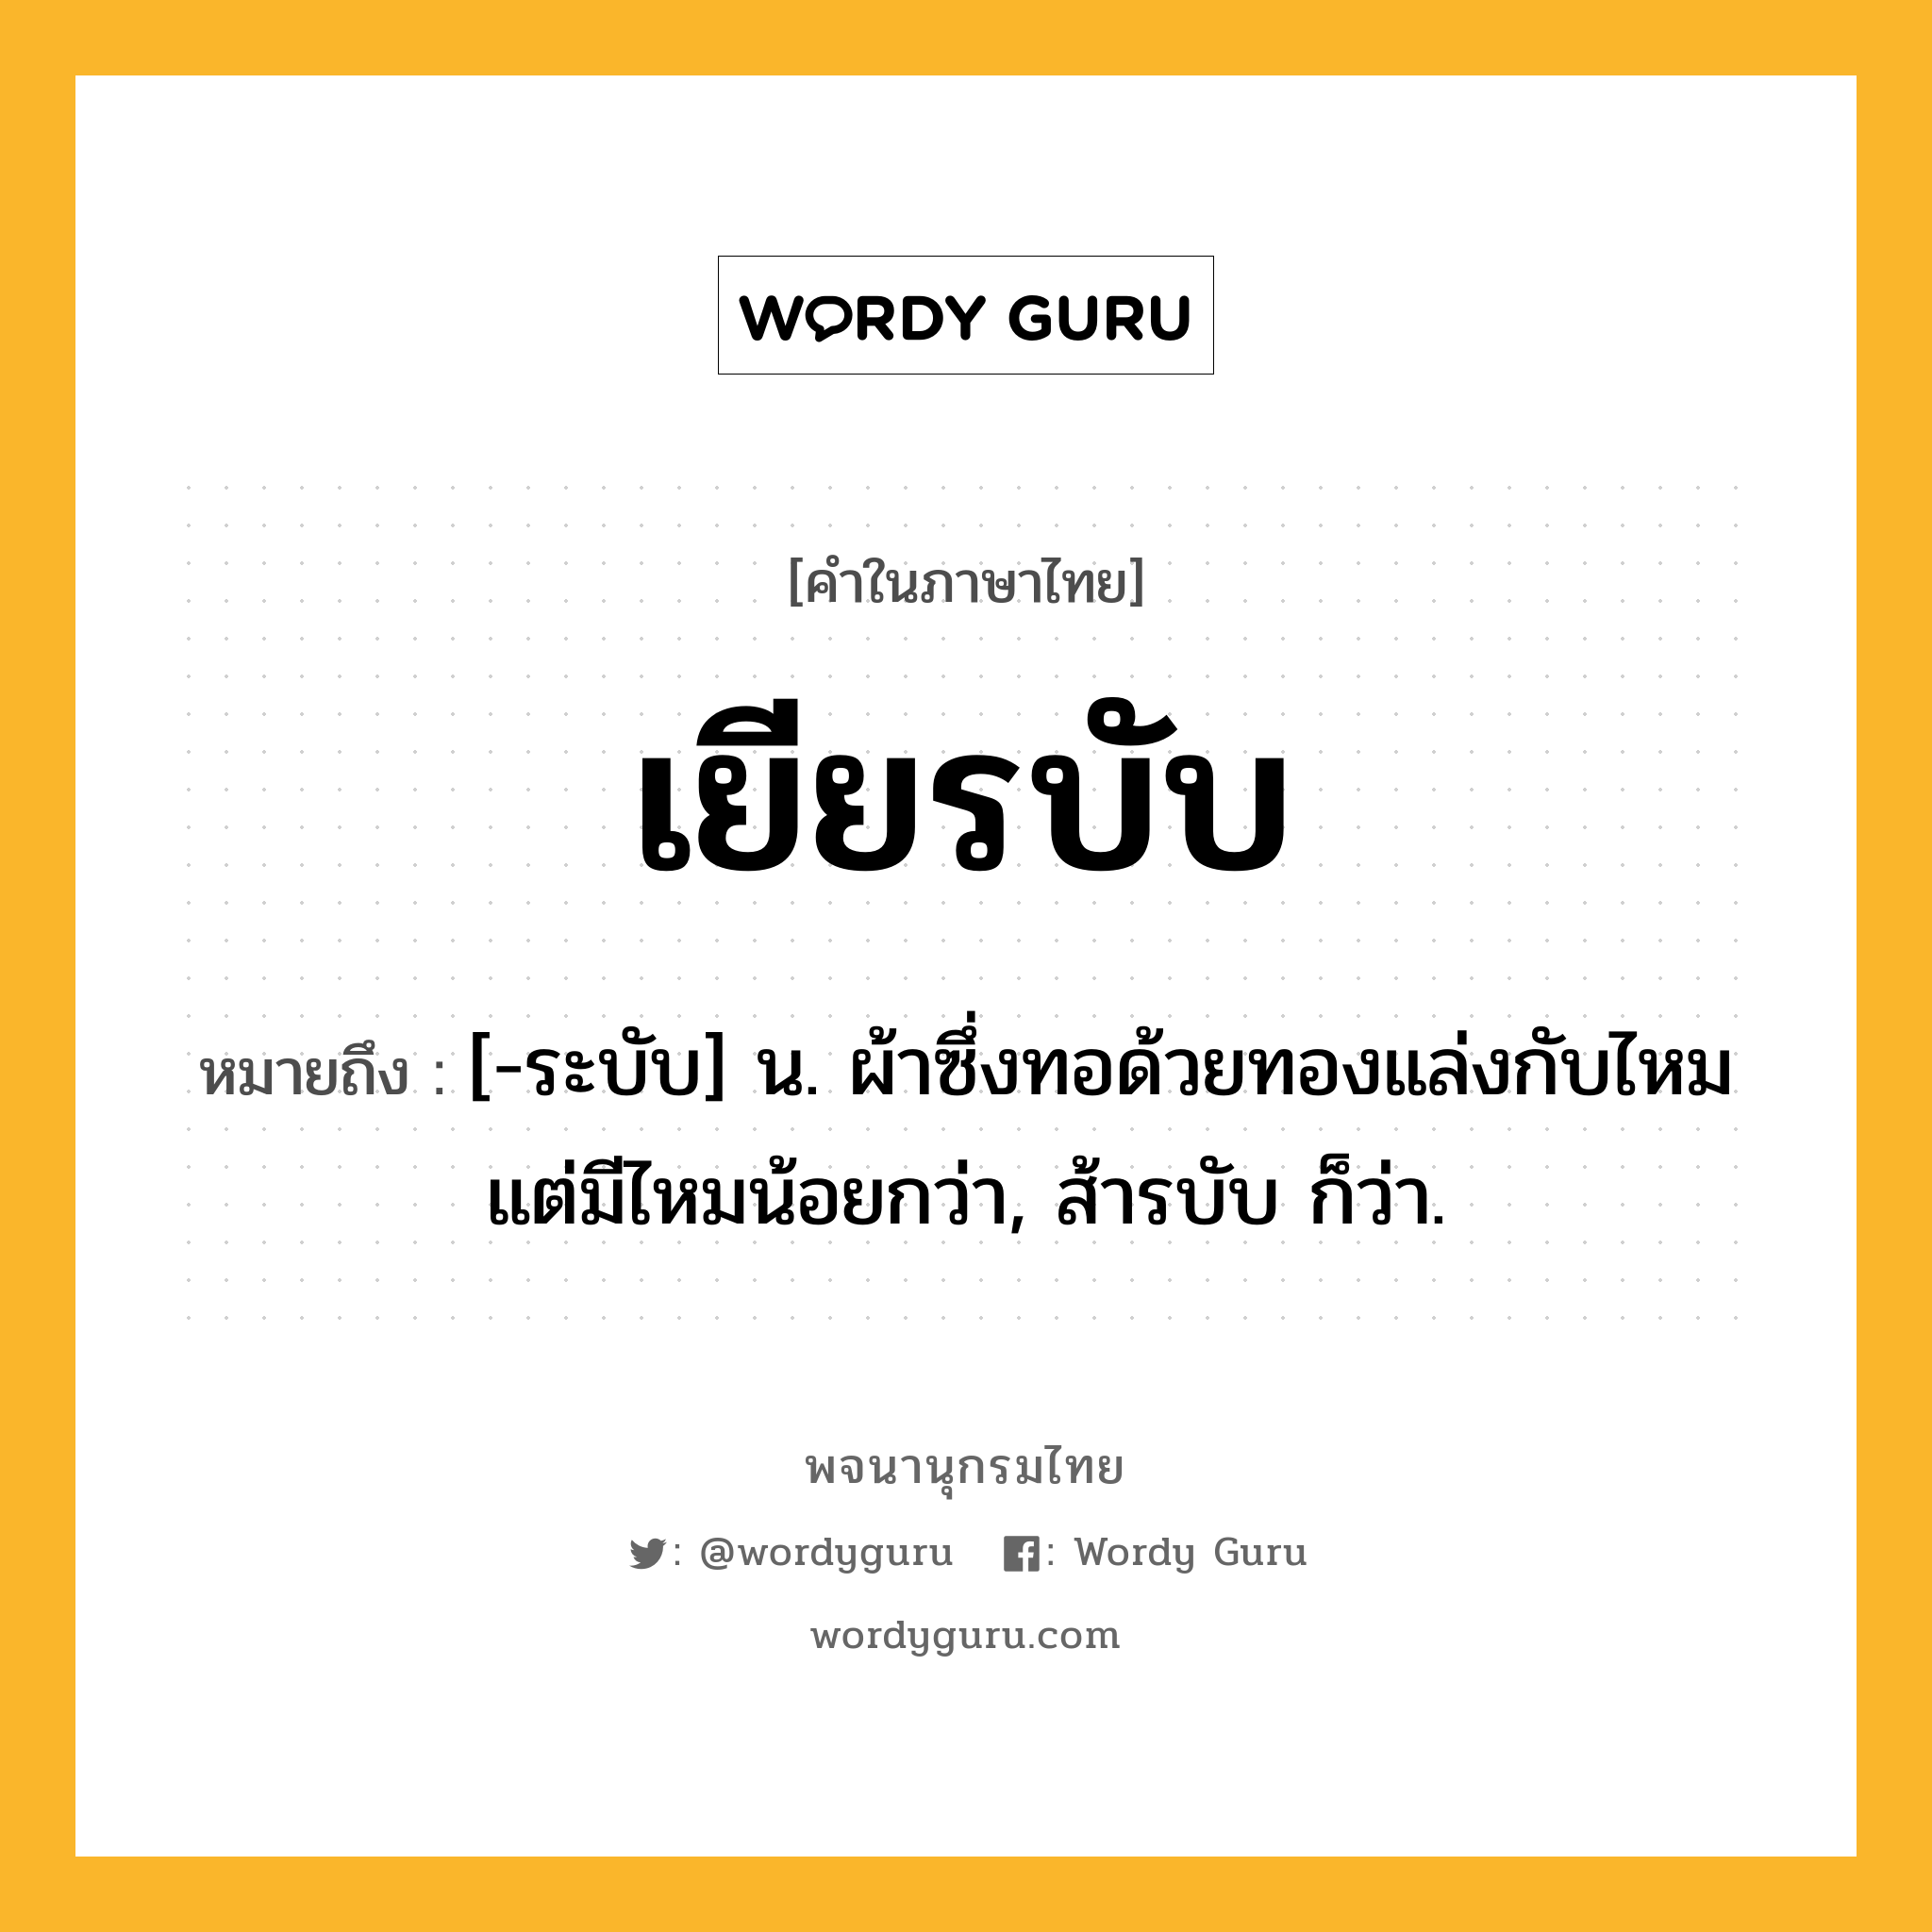 เยียรบับ หมายถึงอะไร?, คำในภาษาไทย เยียรบับ หมายถึง [-ระบับ] น. ผ้าซึ่งทอด้วยทองแล่งกับไหมแต่มีไหมน้อยกว่า, ส้ารบับ ก็ว่า.